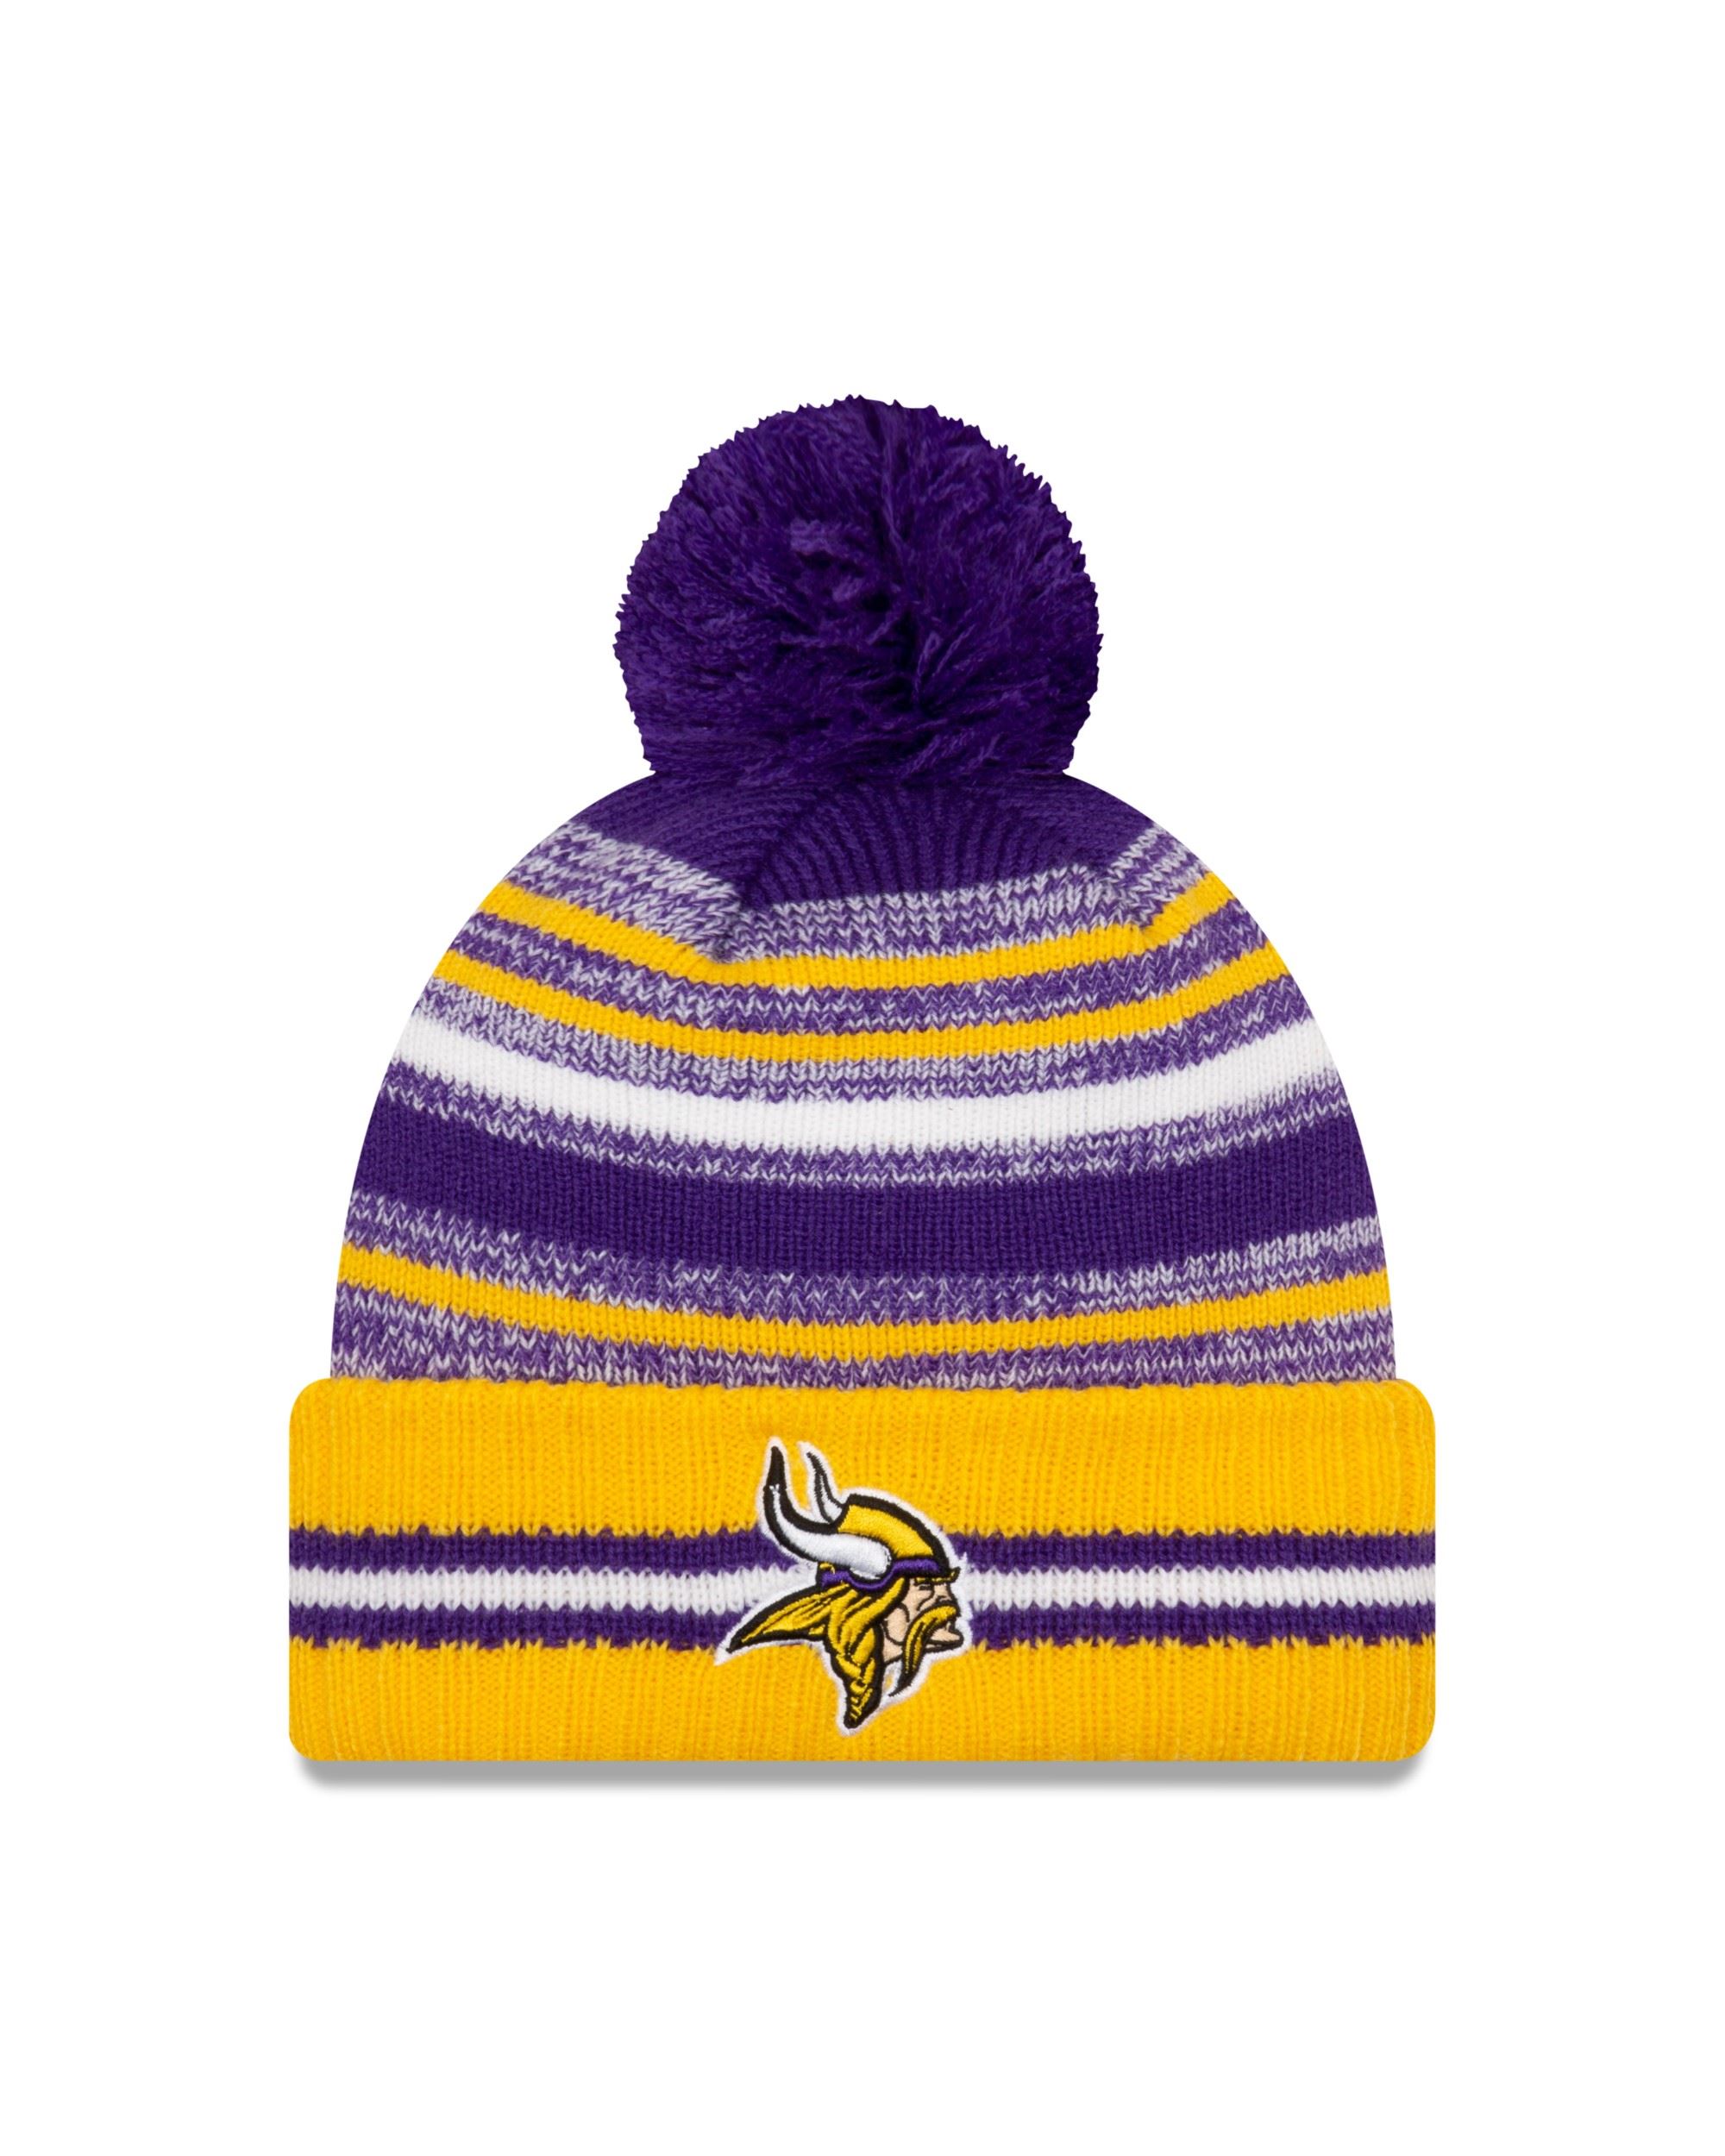 Minnesota Vikings NFL 2021 Sideline Sport Knit Bobble Beanie New Era